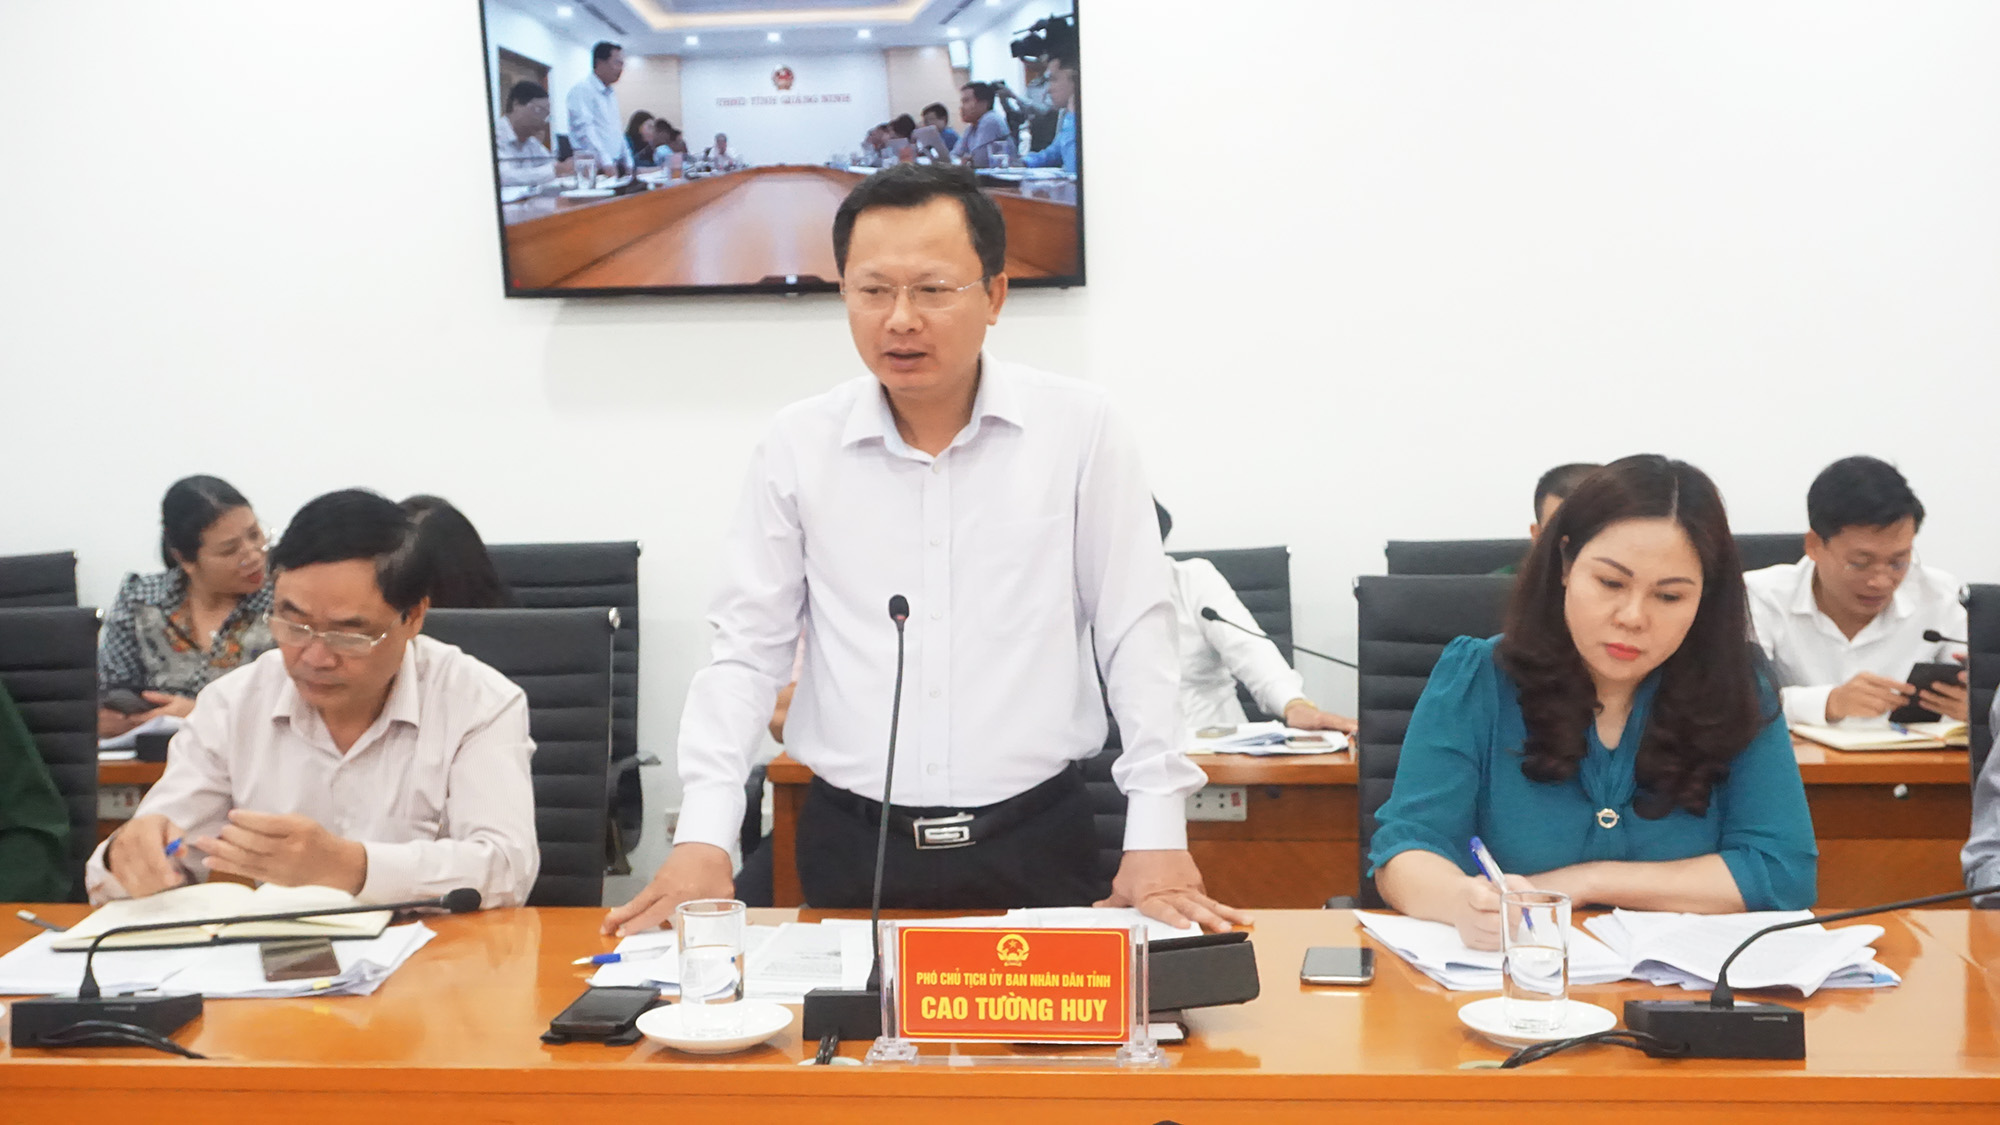 Đồng chí Cao Tường Huy, Phó Chủ tịch UBND tỉnh phát biểu tại buổi làm việc.